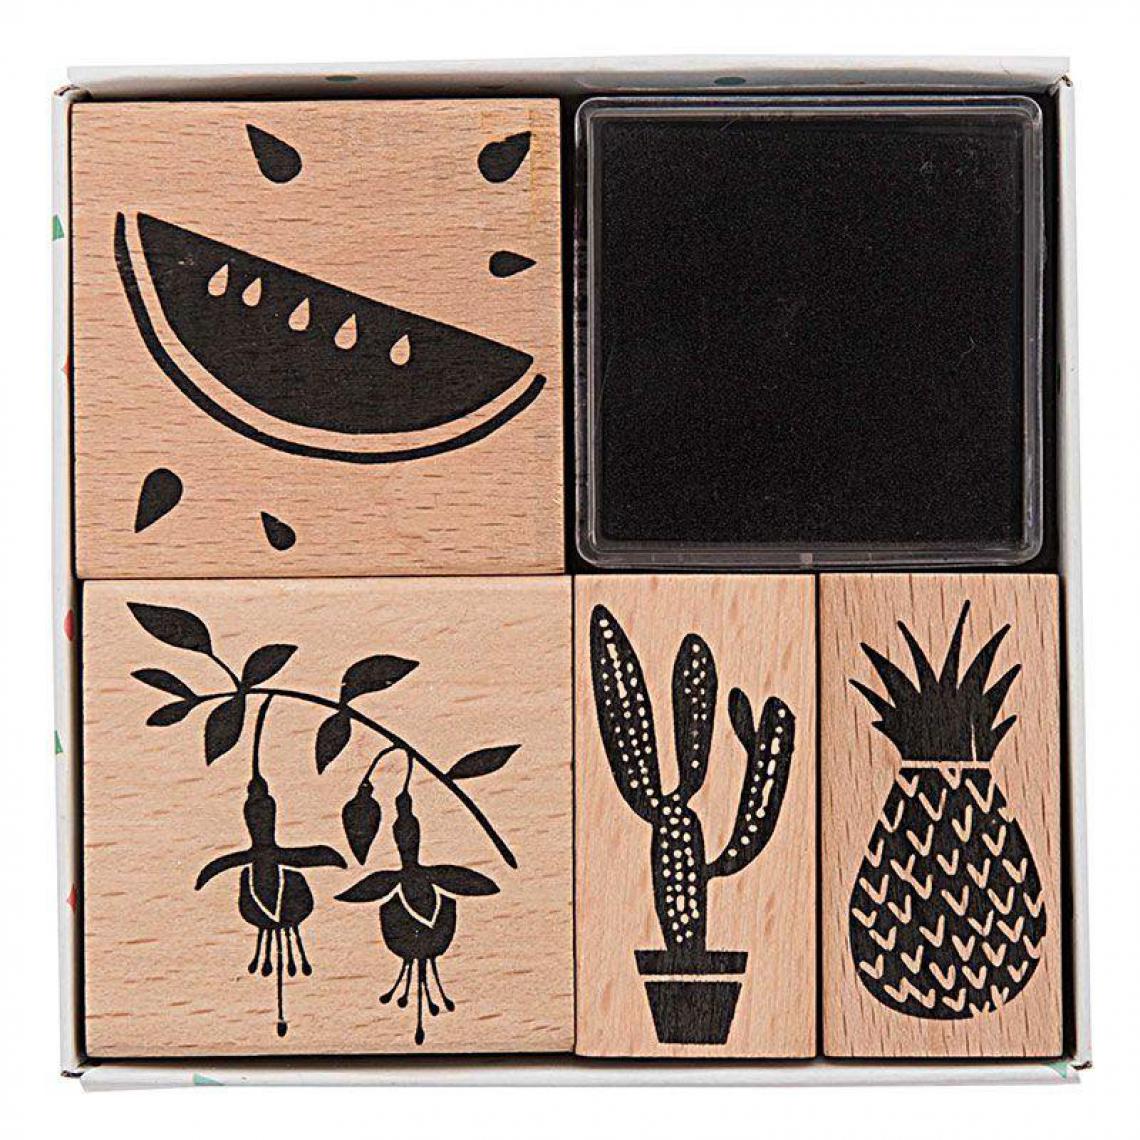 Rico - 4 tampons en bois avec encreur - pastèque et ananas - Accessoires Bureau